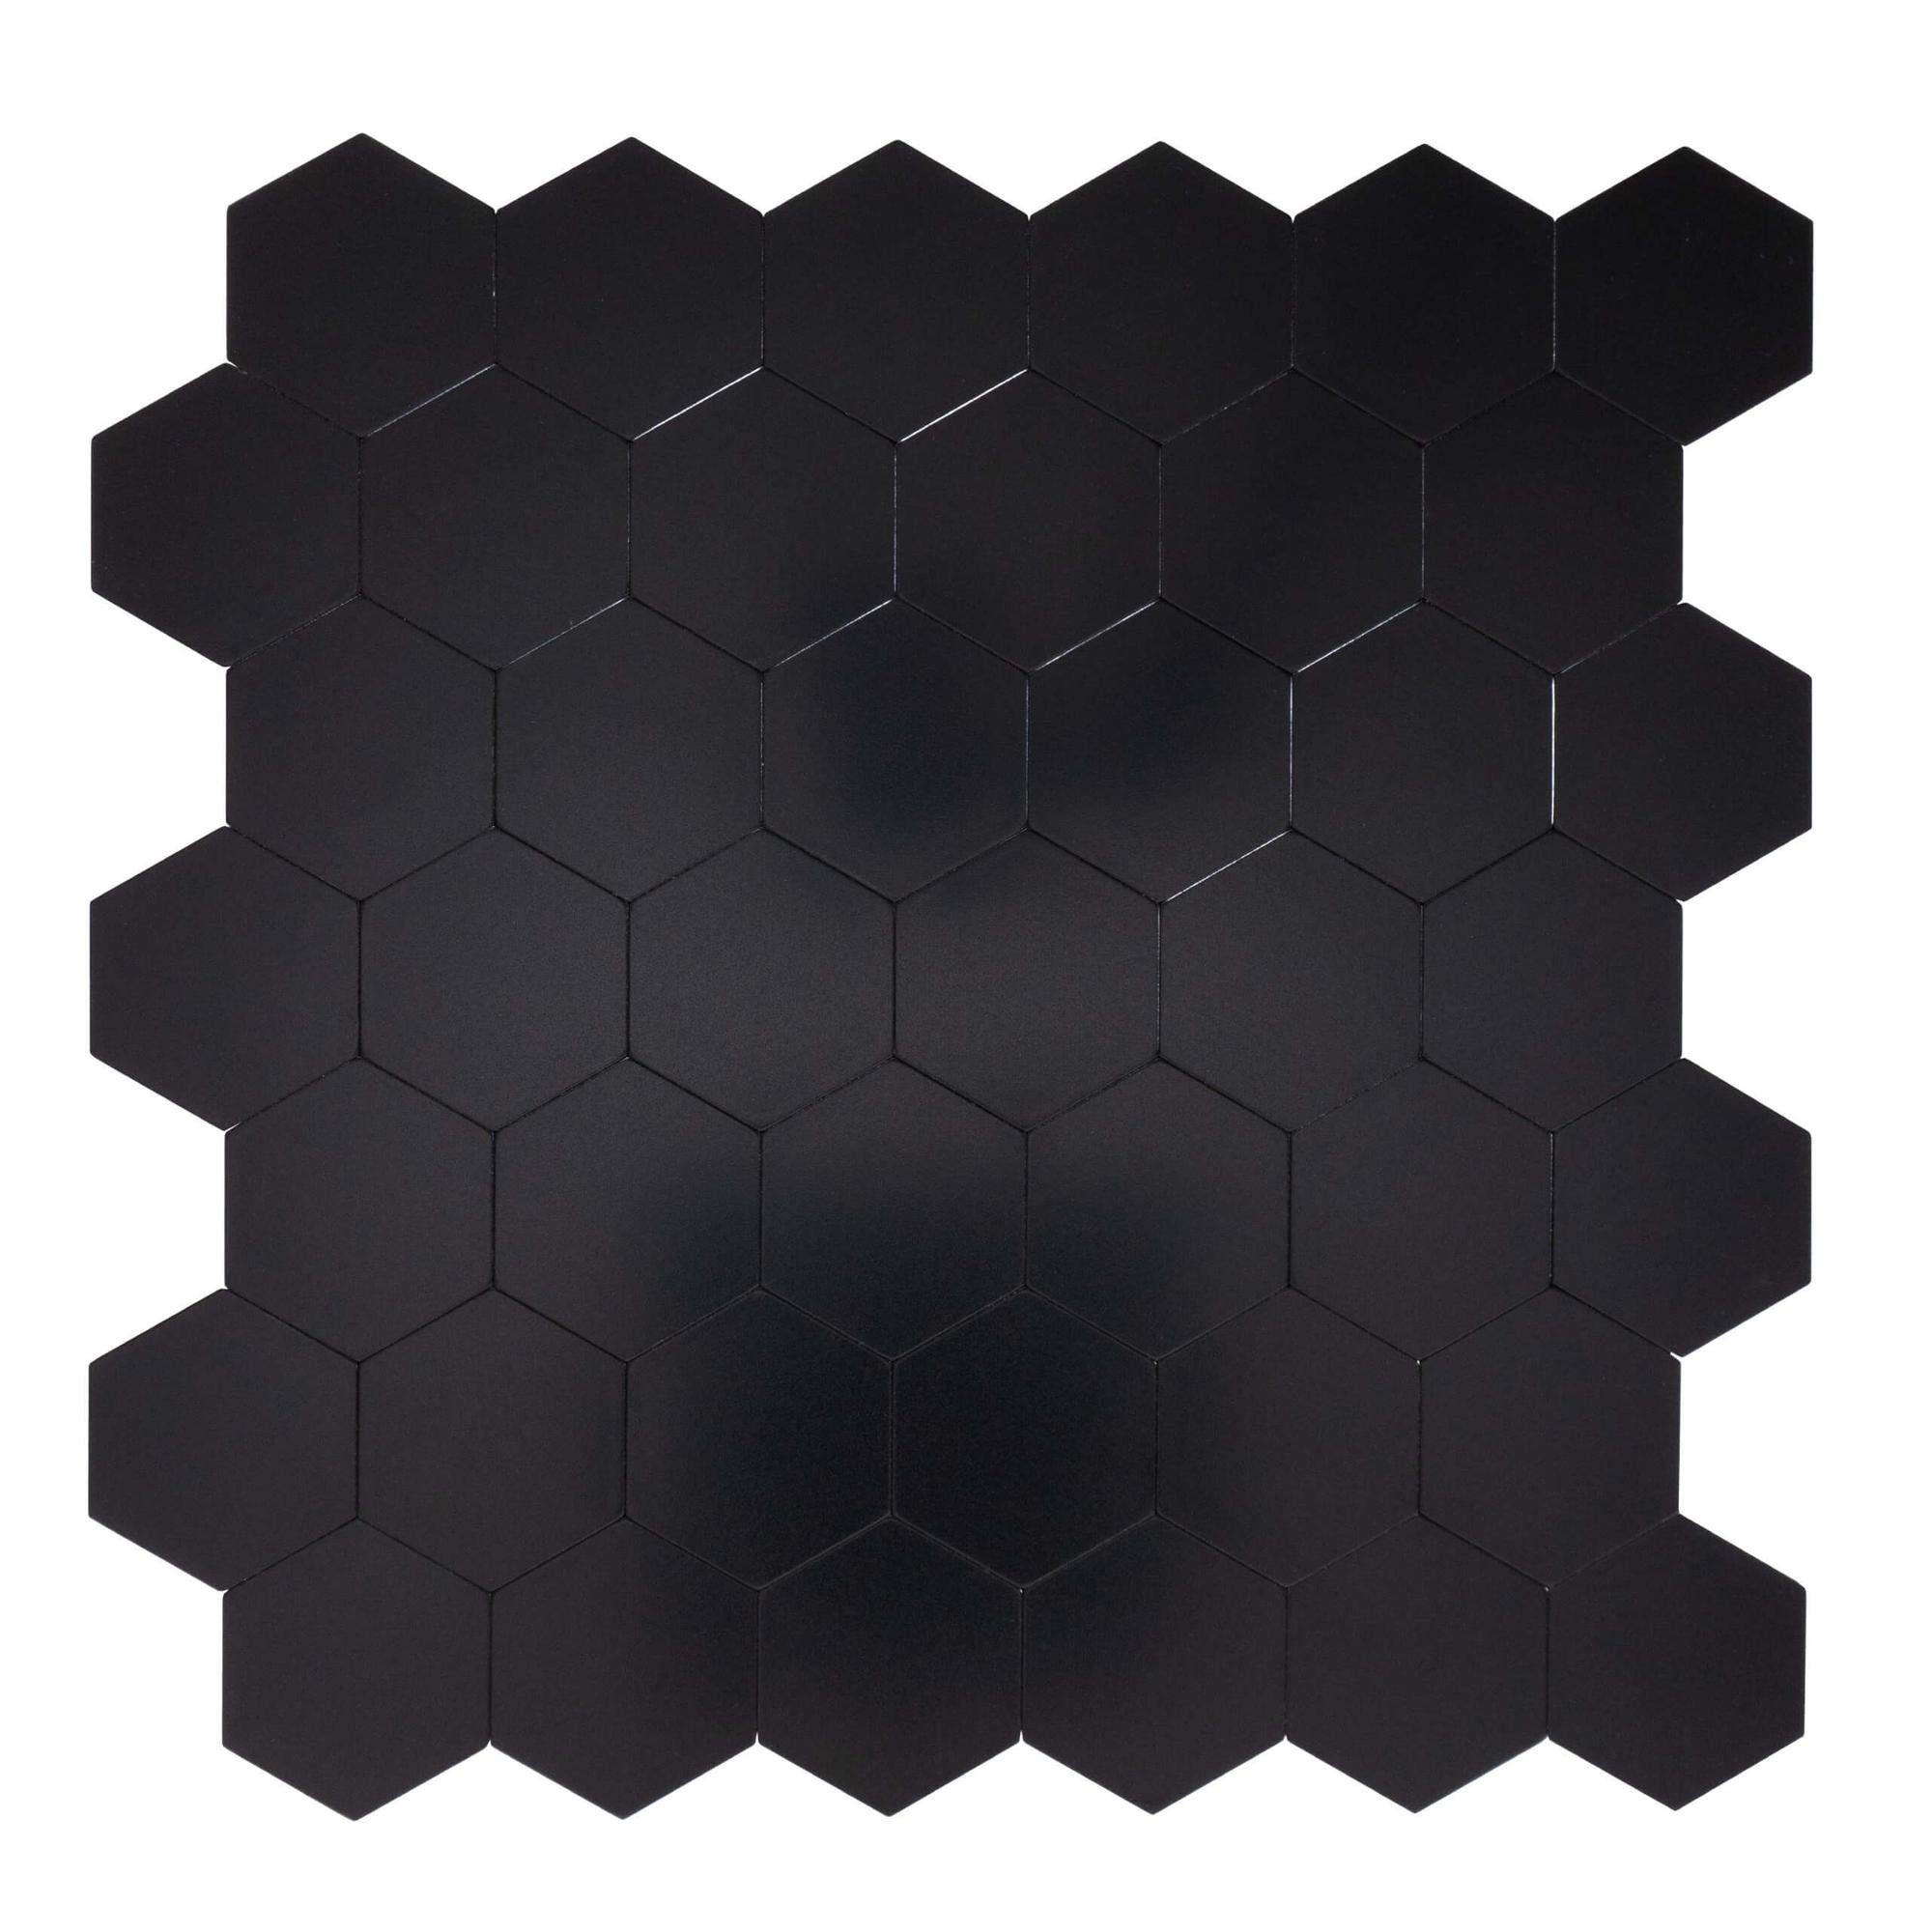 Dalsys Wandpaneel 1m² 11 Stück selbstklebend, (Schwarz Wabenmuster, 11-tlg., Wandfliese) feuchtigskeitsbeständig, einfach montiert, hochwertiges Material